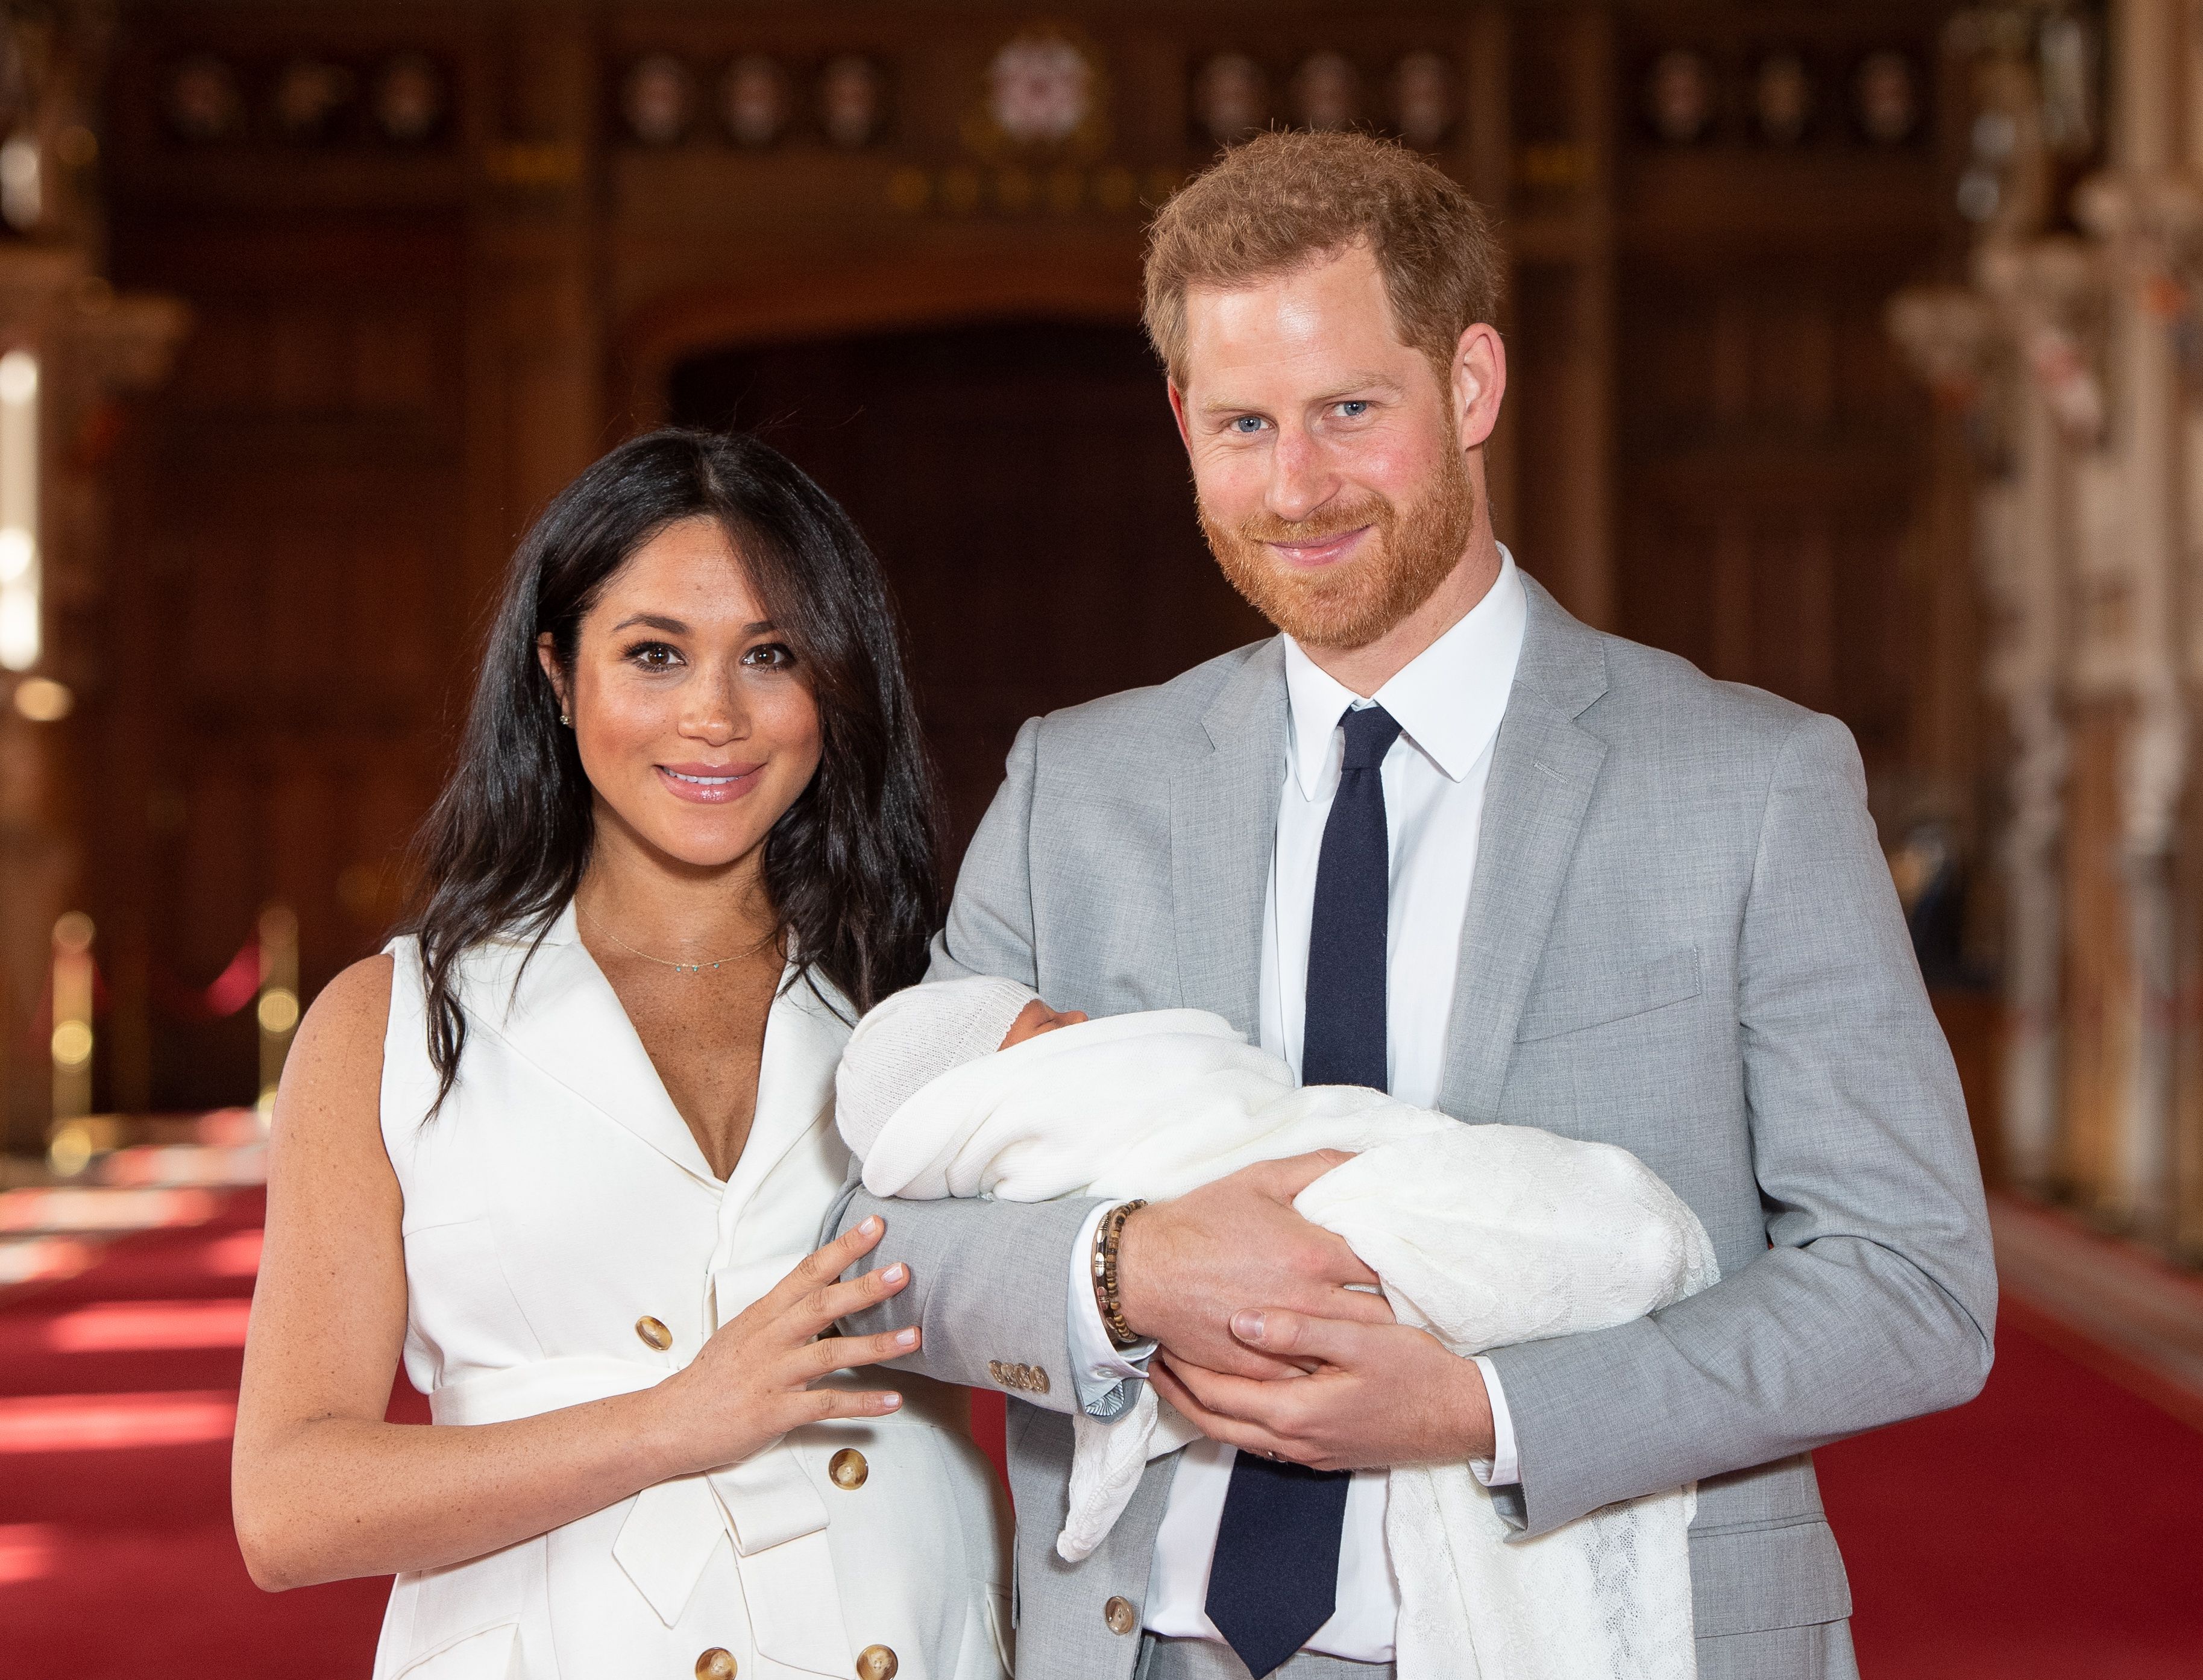 Le prince Harry et Meghan Markle posent avec leur fils nouveau-né Archie Harrison Mountbatten-Windsor dans le hall St George du château de Windsor le 8 mai 2019 à Windsor, en Angleterre. | Source : Getty Images